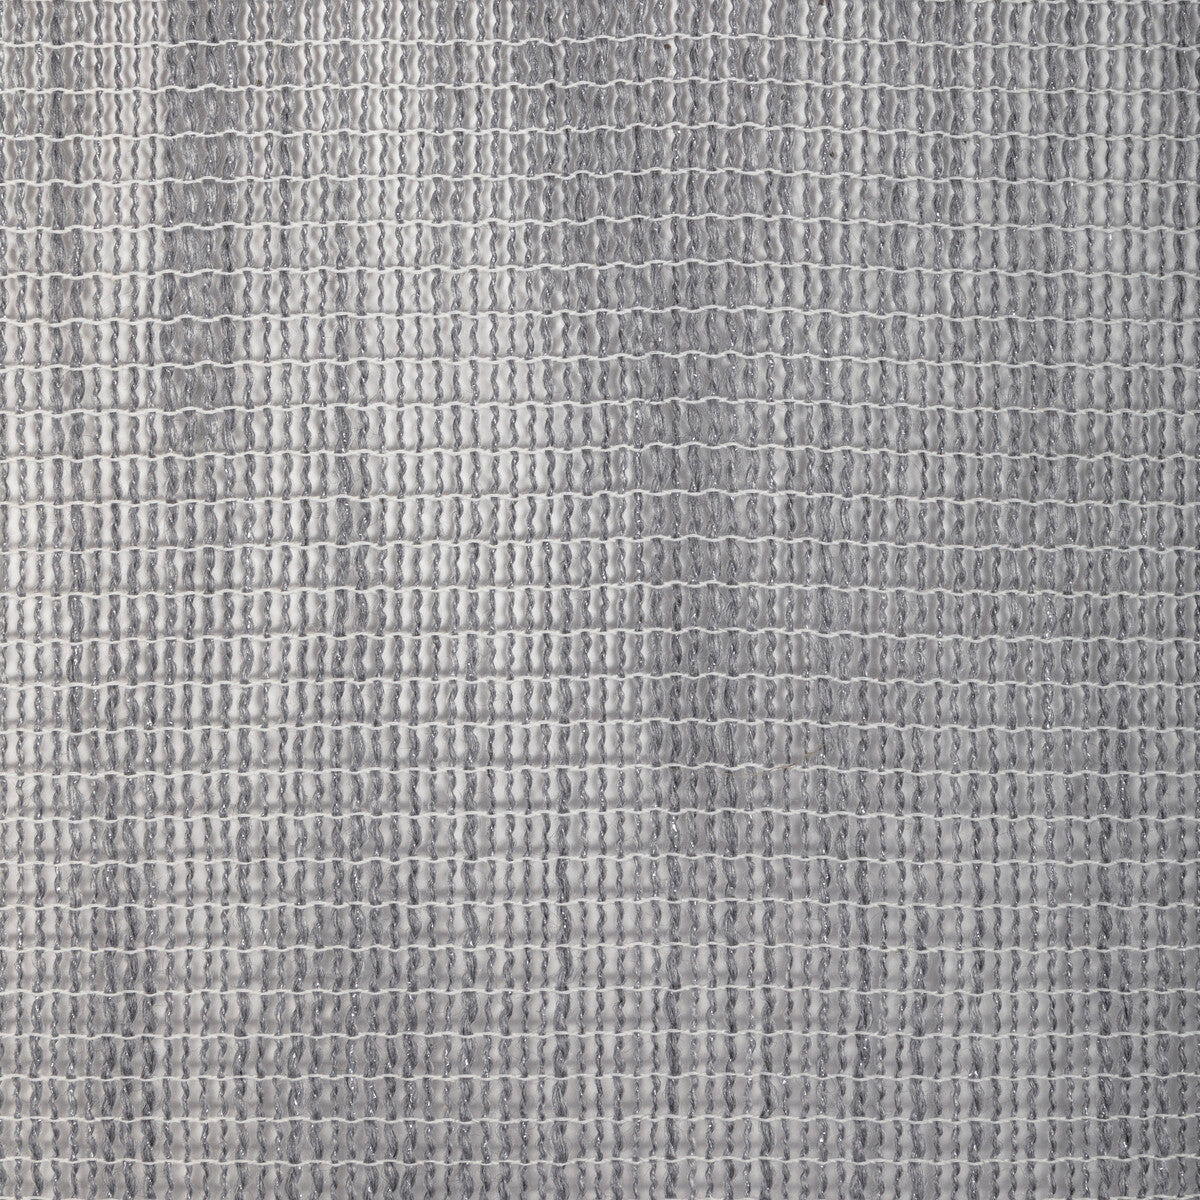 Kravet Design fabric in 4922-11 color - pattern 4922.11.0 - by Kravet Design